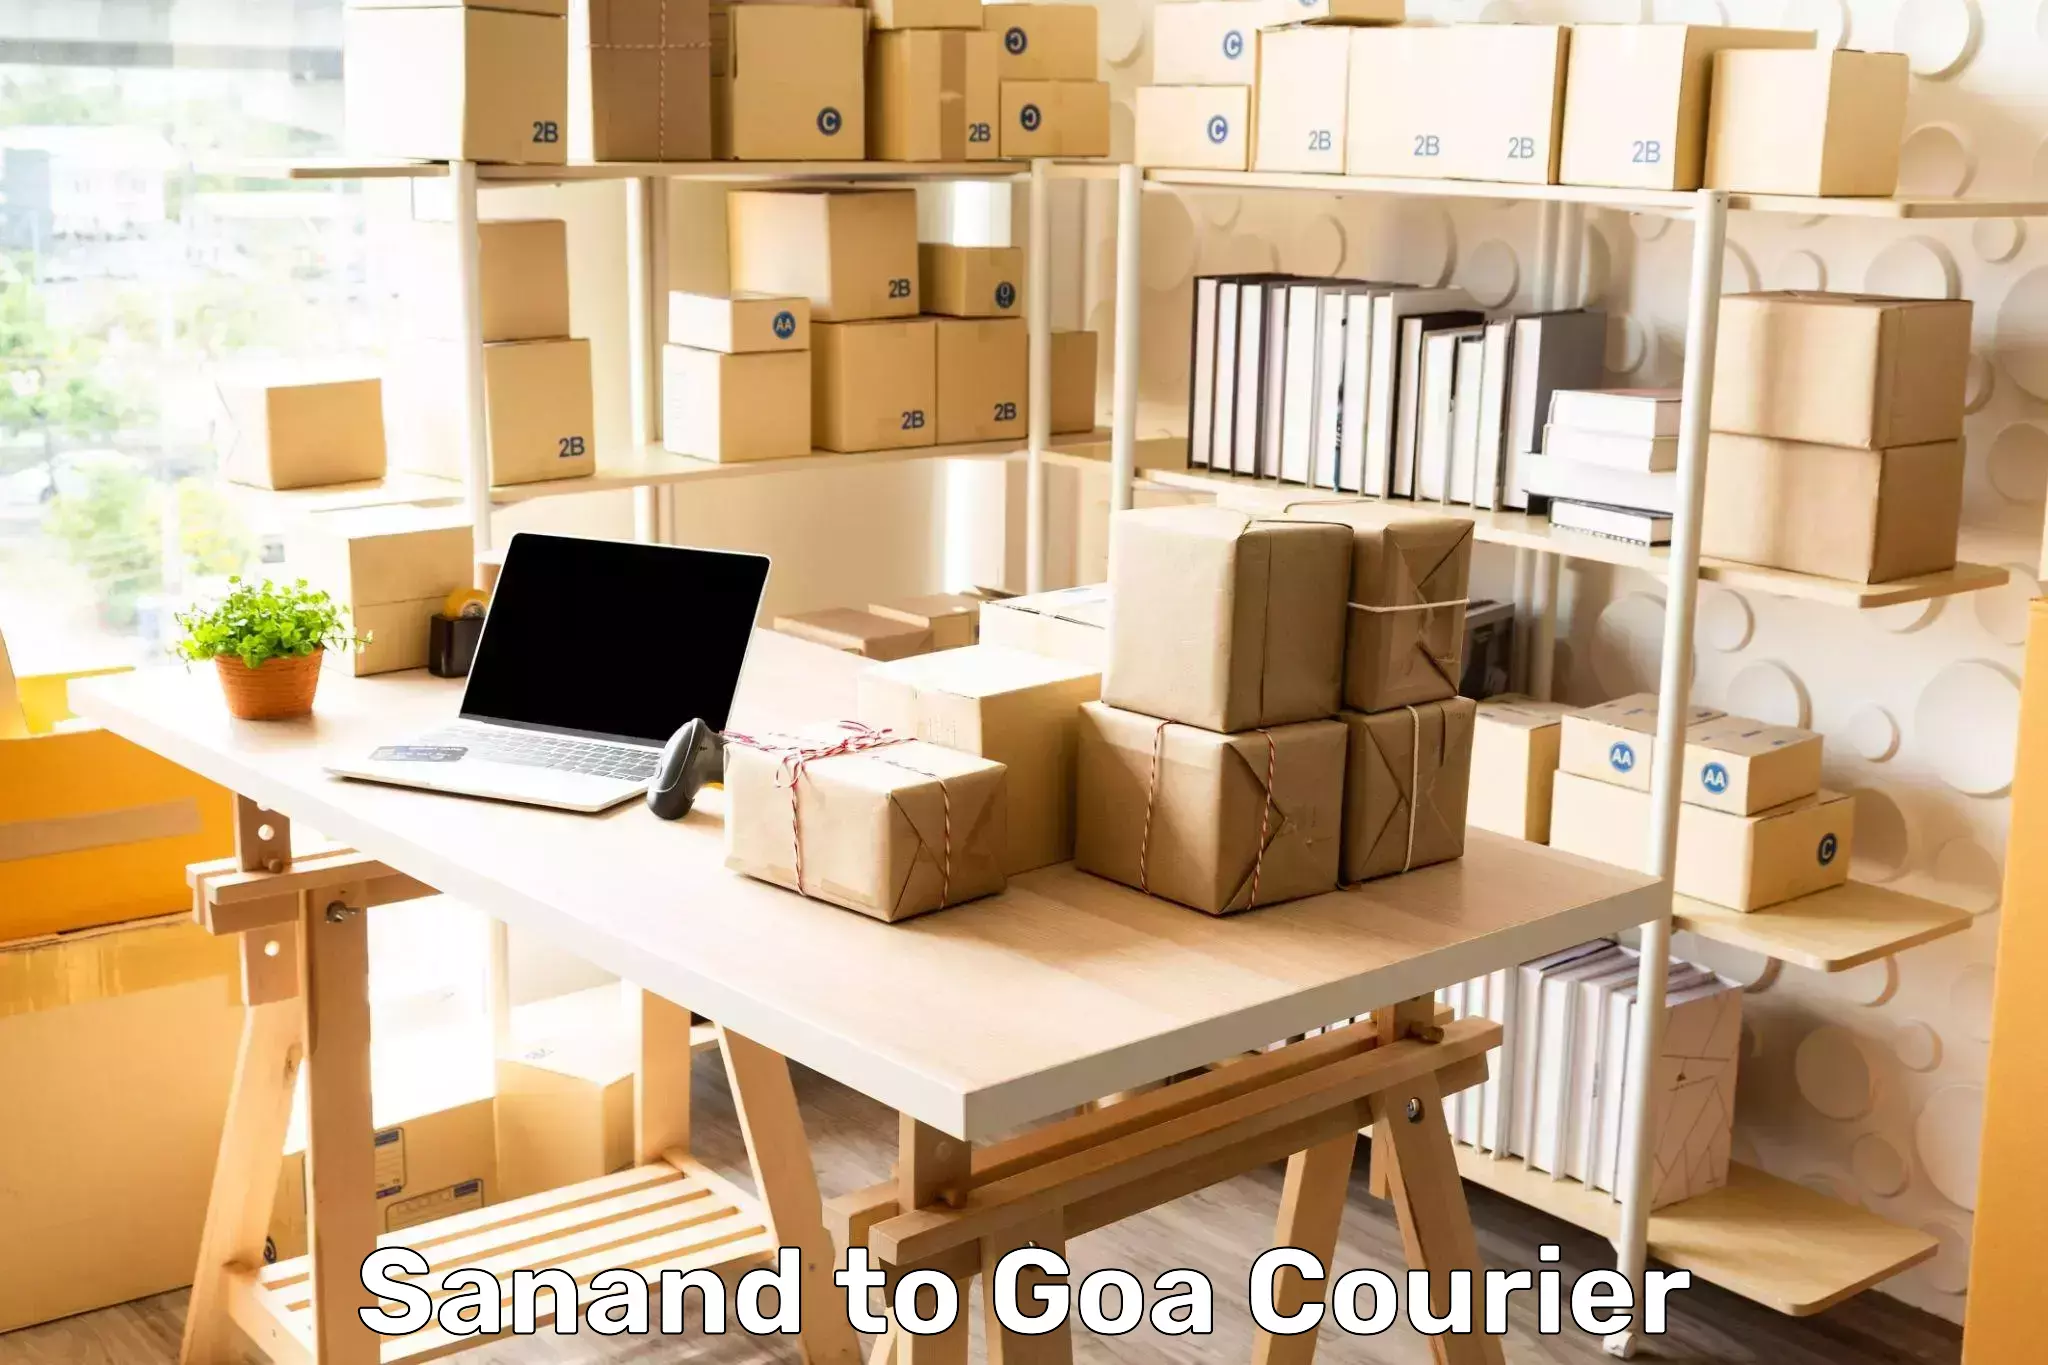 Customer-centric shipping Sanand to Vasco da Gama